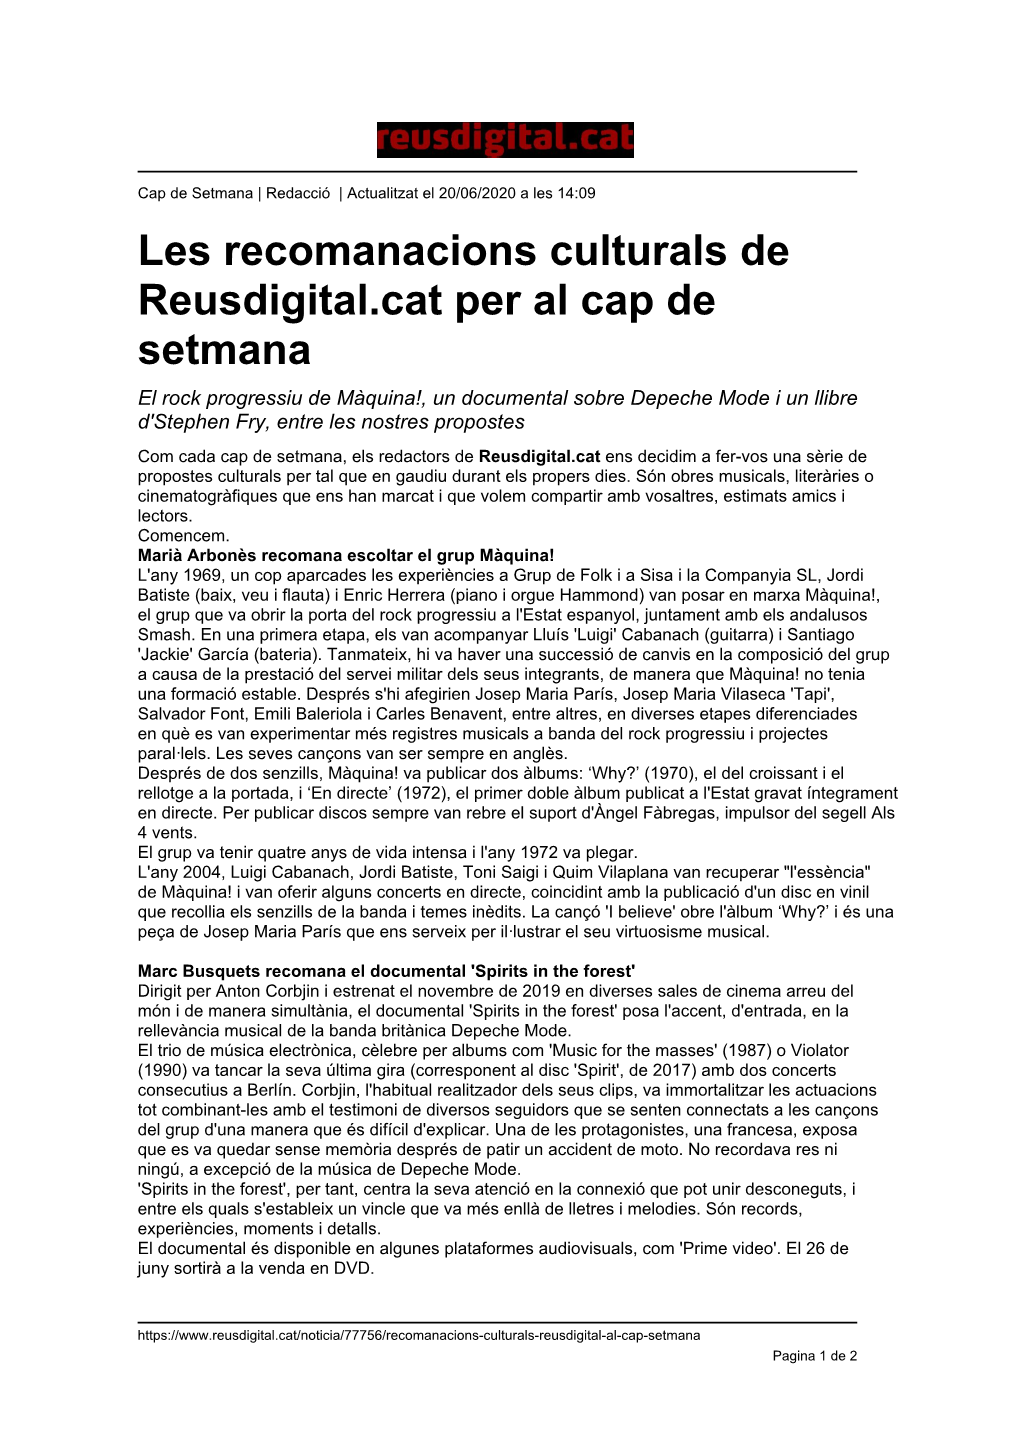 Les Recomanacions Culturals De Reusdigital.Cat Per Al Cap De Setmana